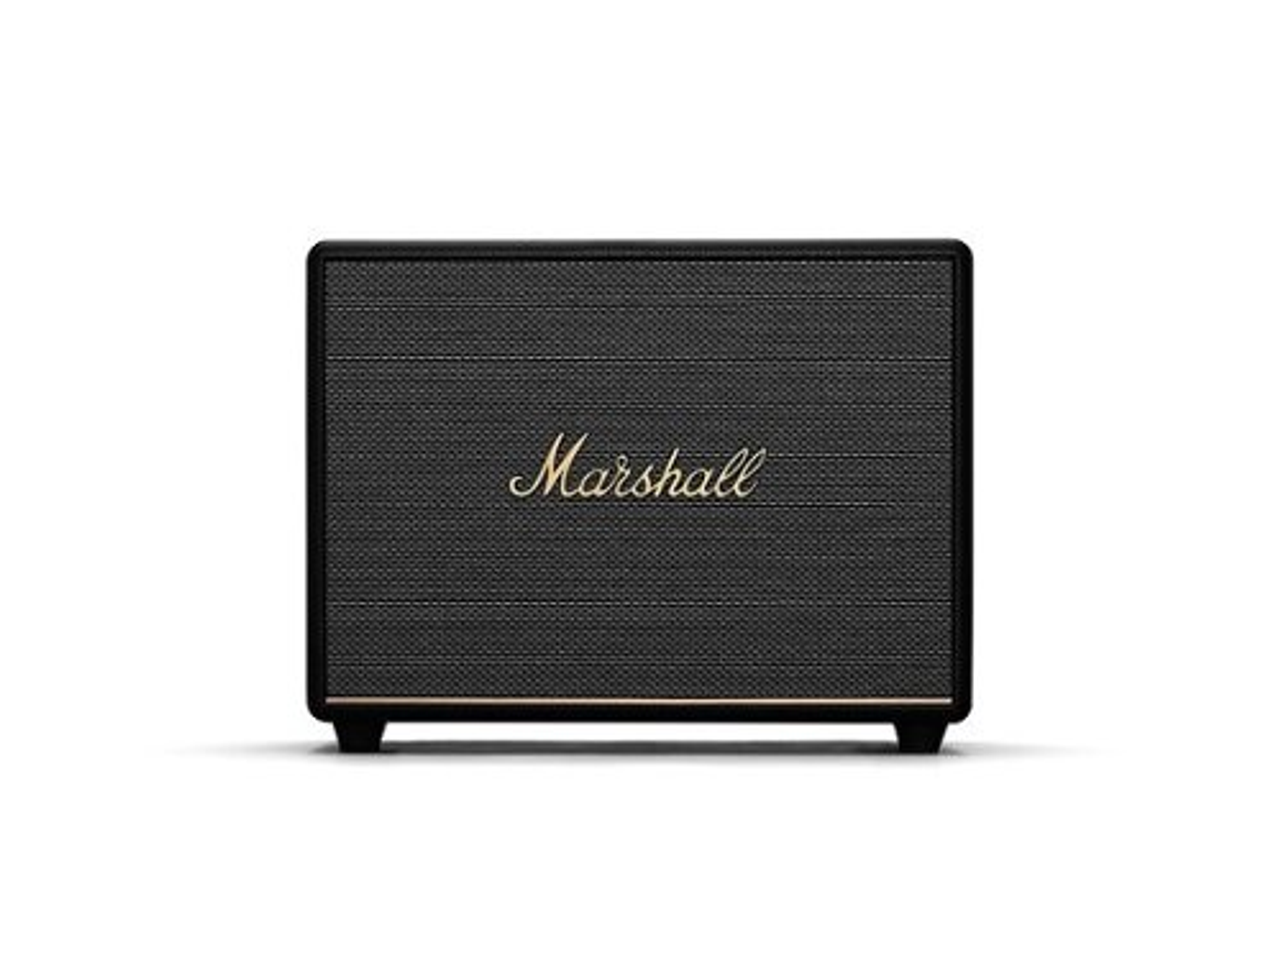 Marshall - WOBURN III BLUETOOTH SPEAKER - Black